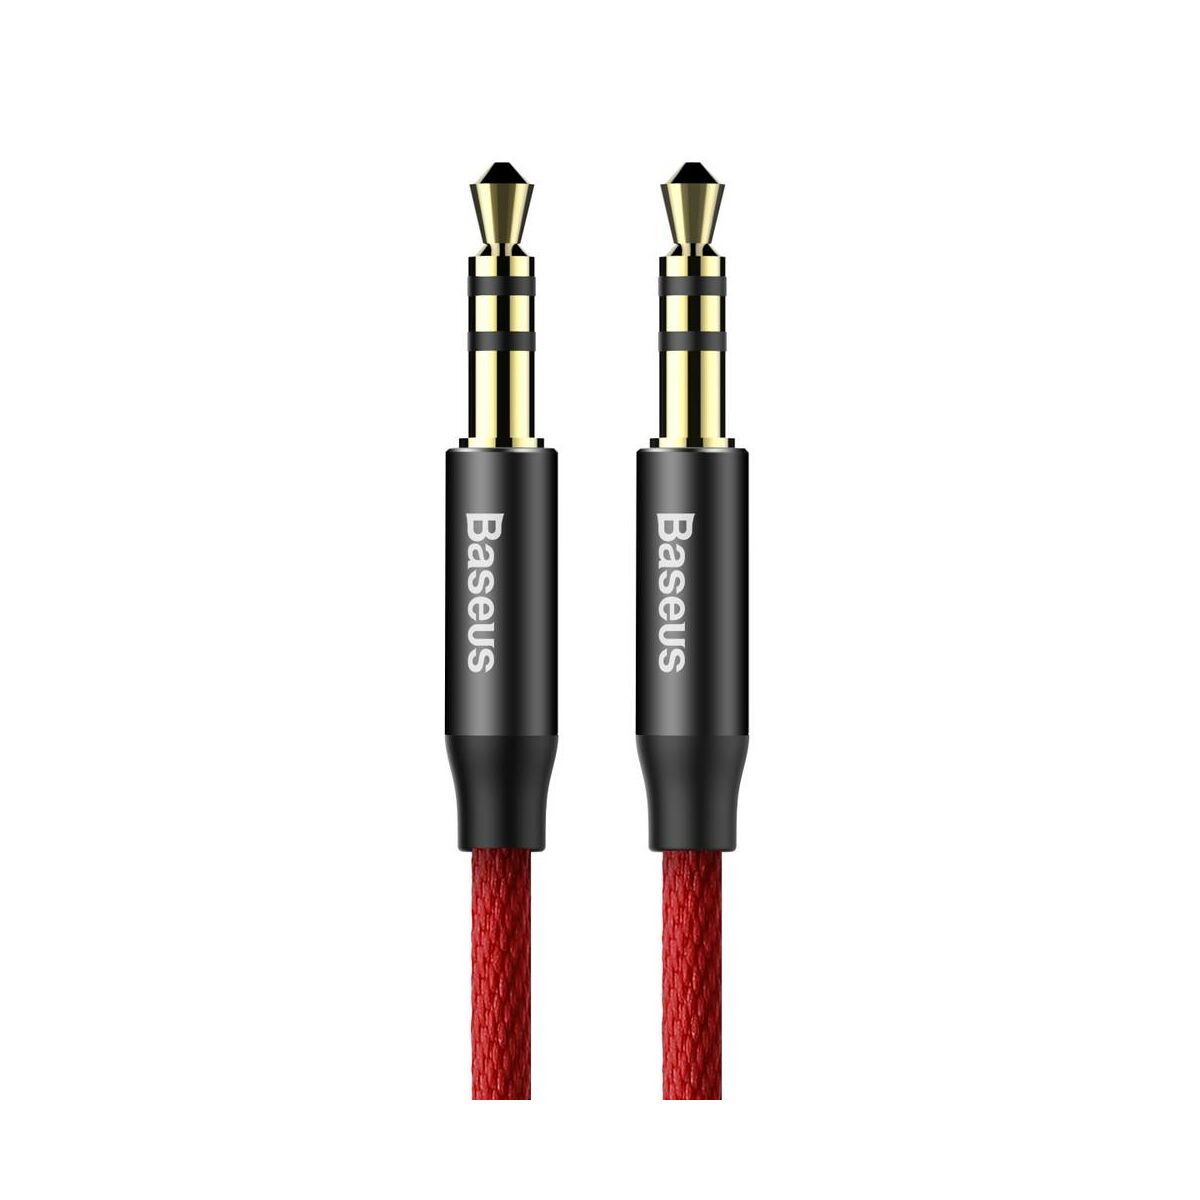 Kép 2/8 - Baseus Audio kábel, Yiven M30 AUX 1.5m, piros/fekete (CAM30-C91)